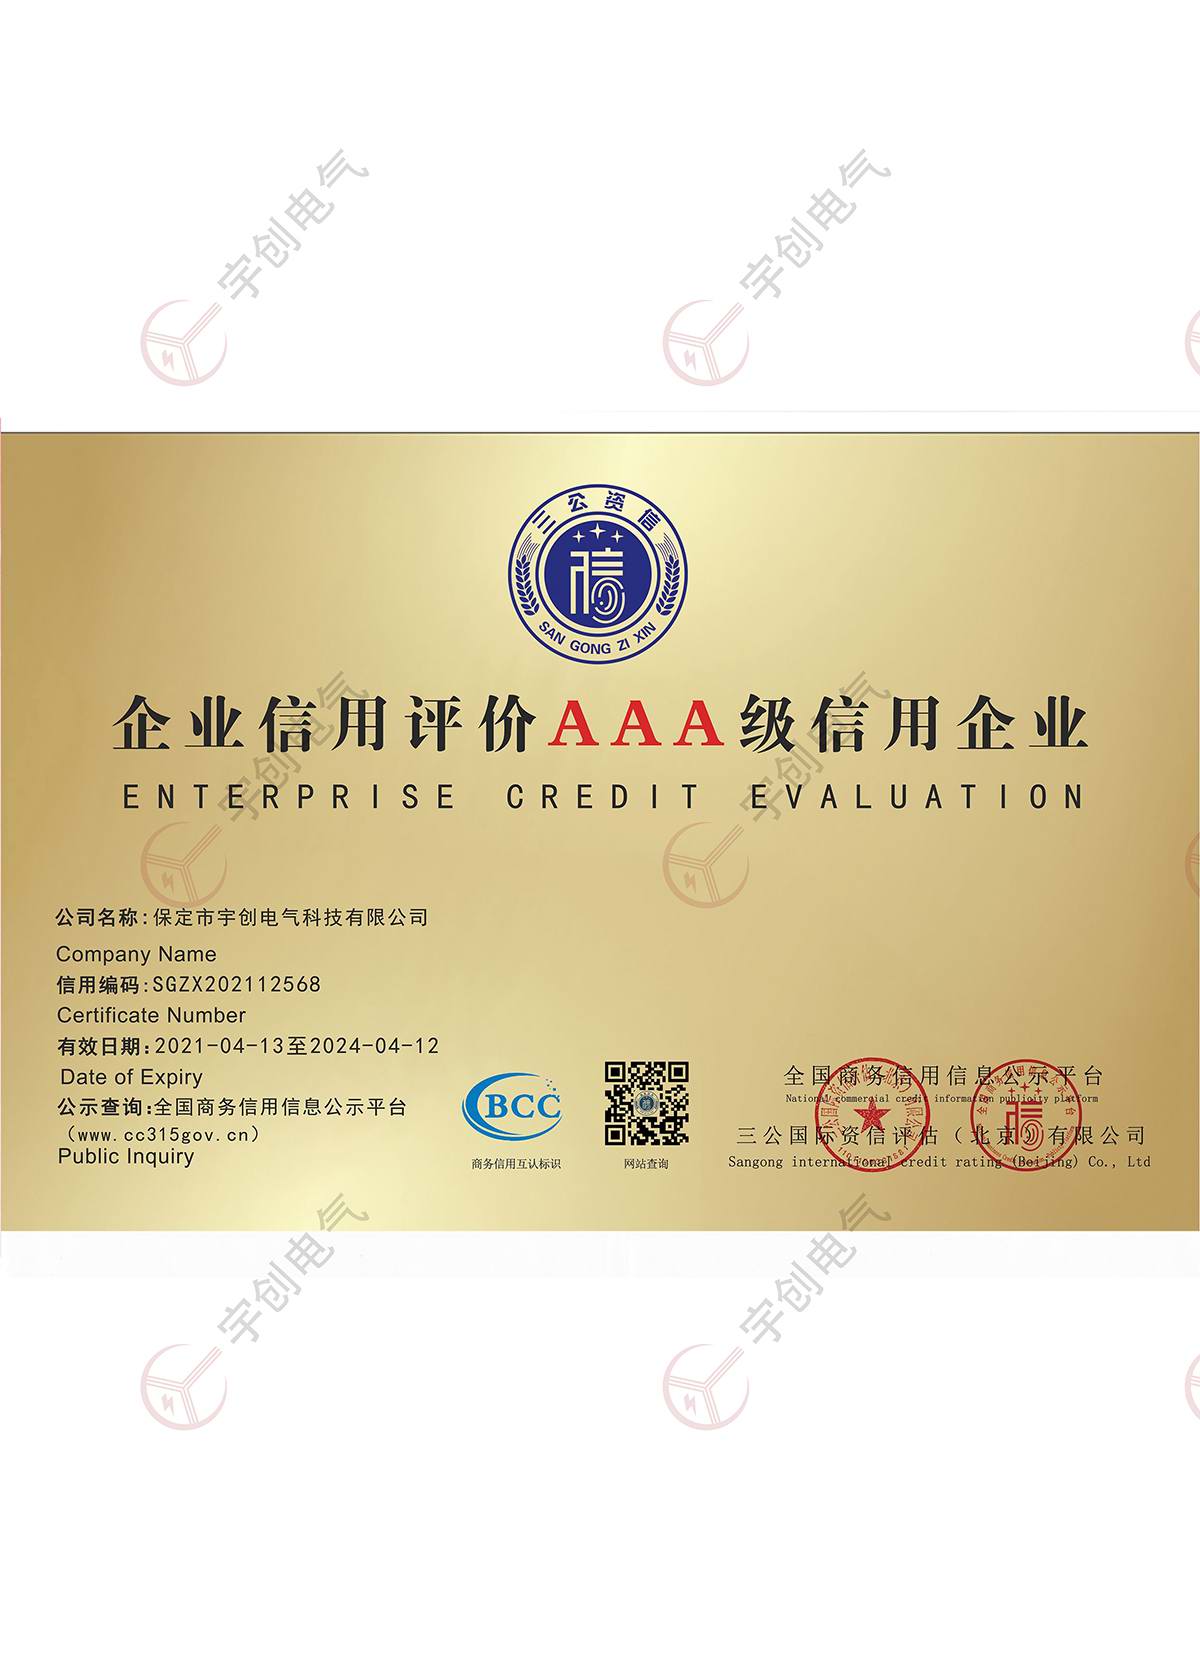 唐山企业信用评价AAA级信用企业